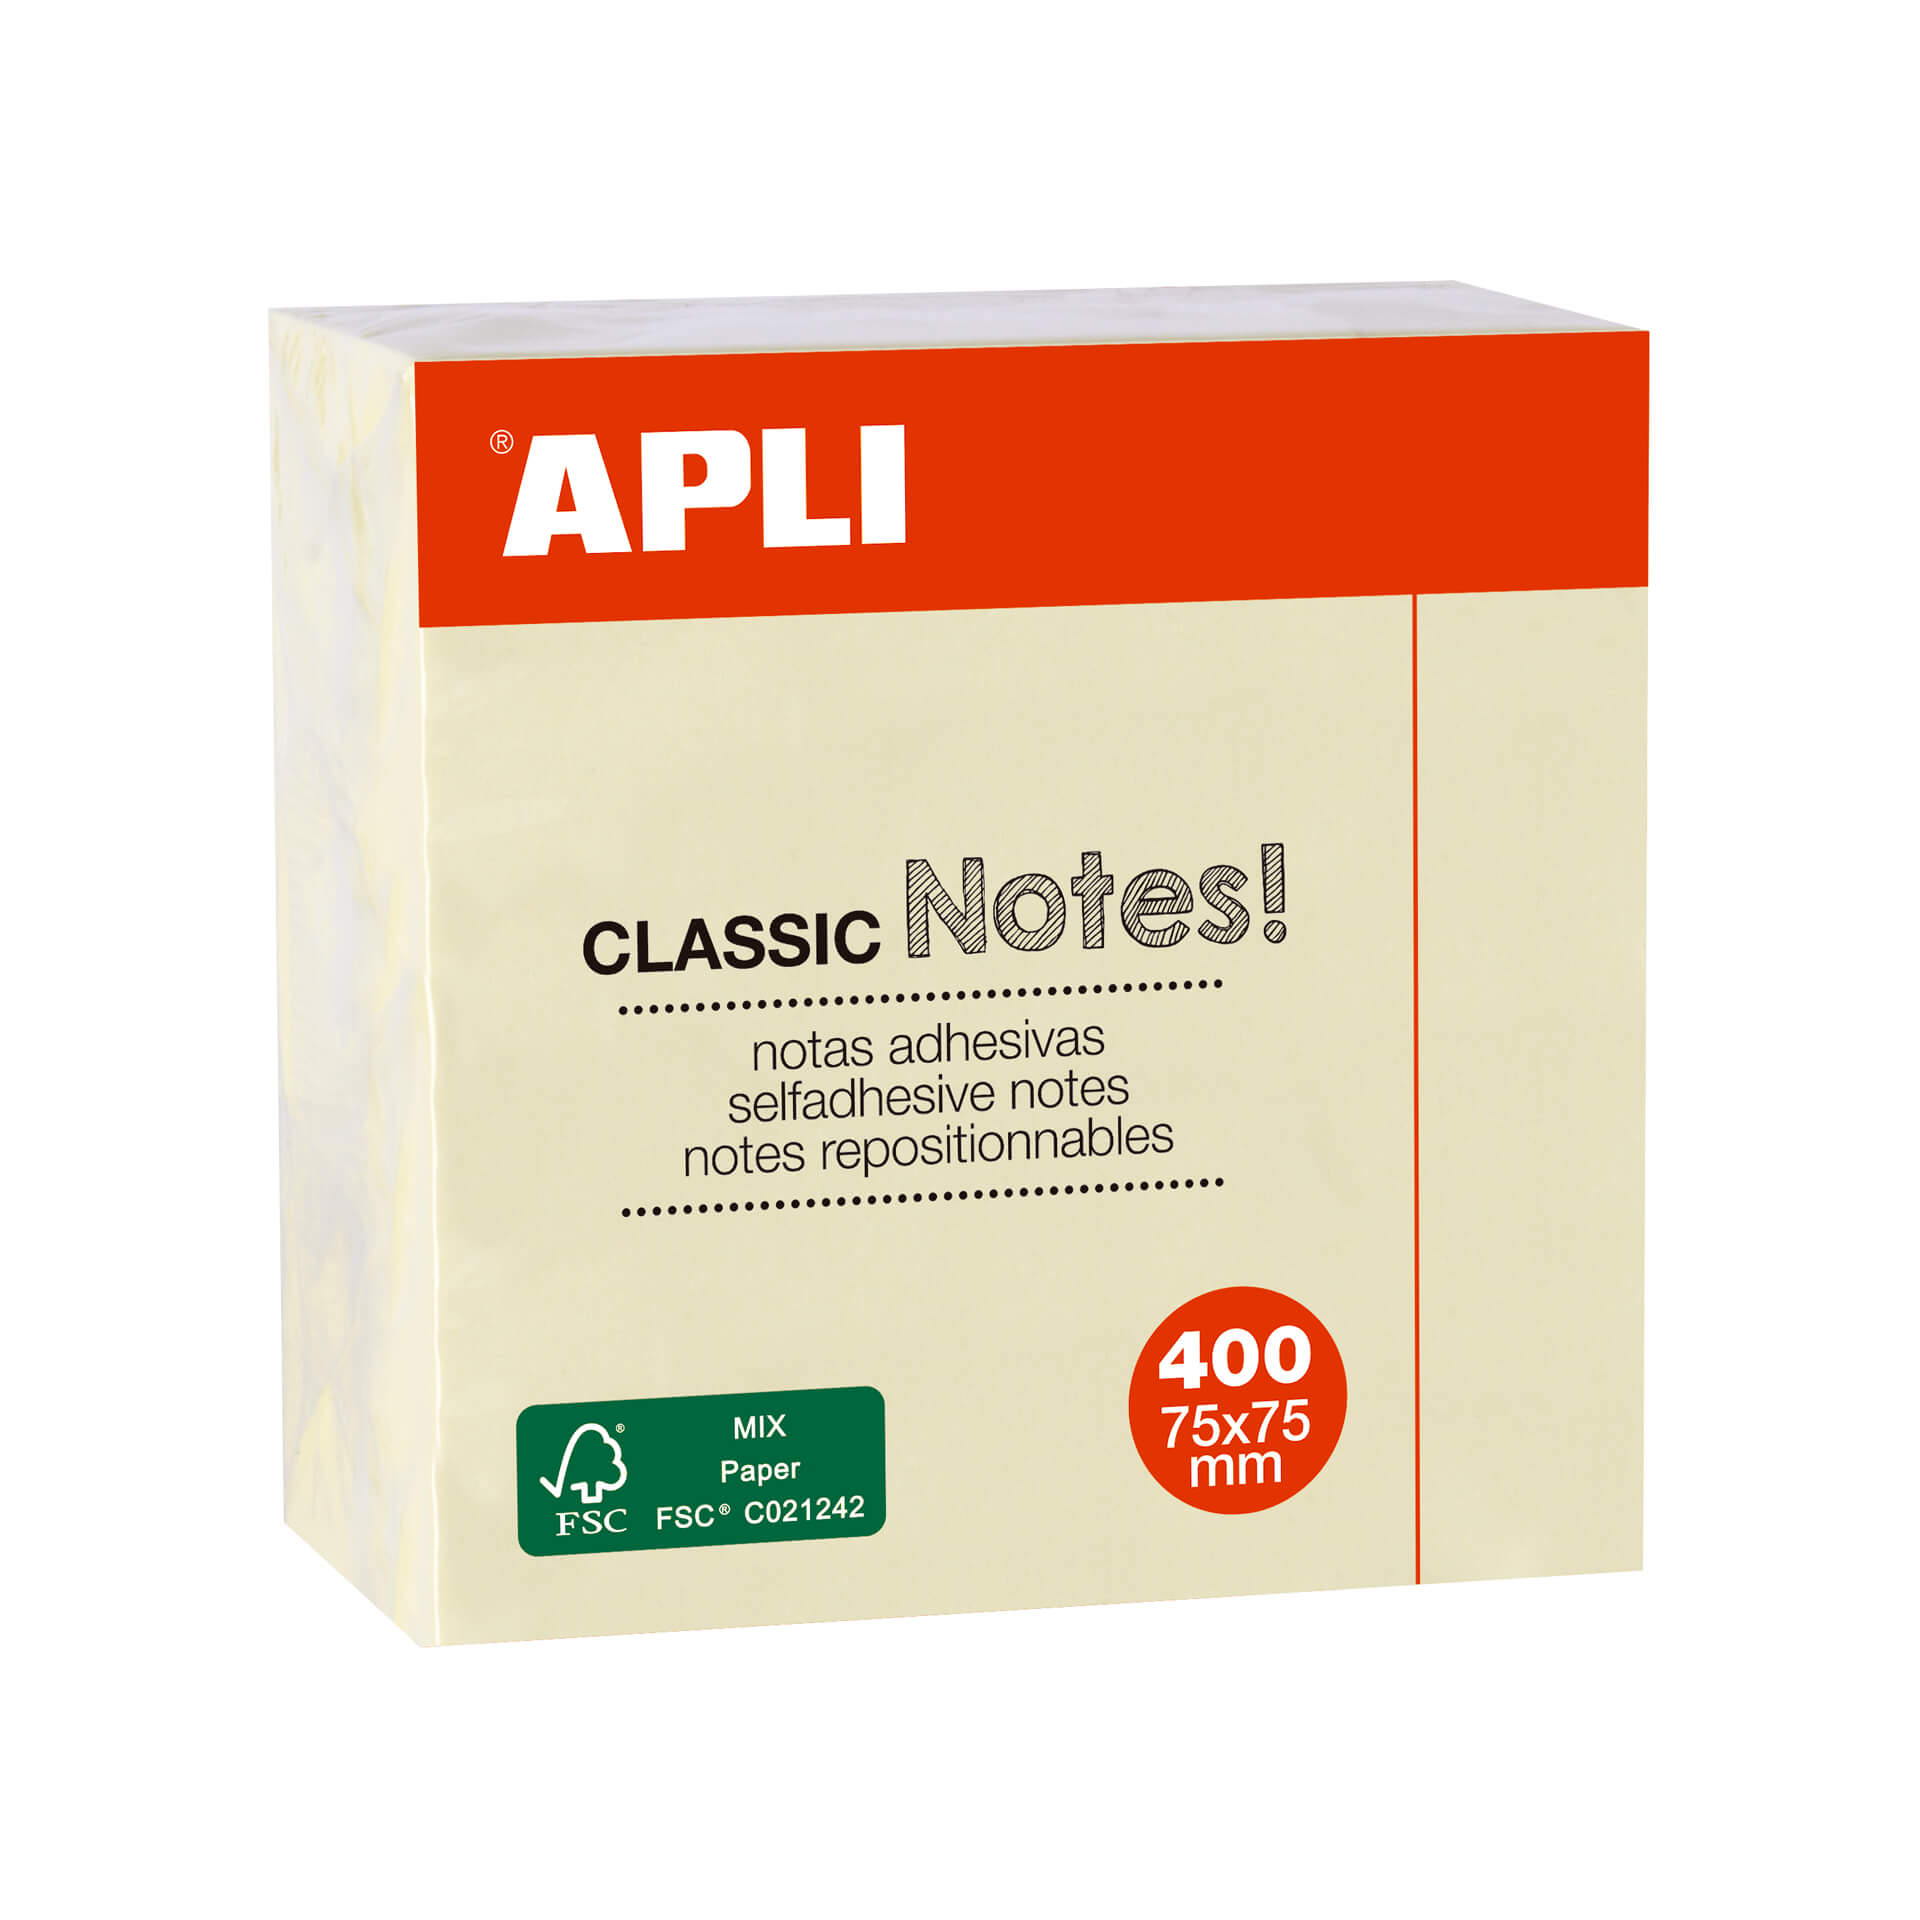 Apli Notas Adhesivas Classic 75x75mm - Cubo de 400 Hojas - Adhesivo de Calidad - Facil de Despegar - Amarillo